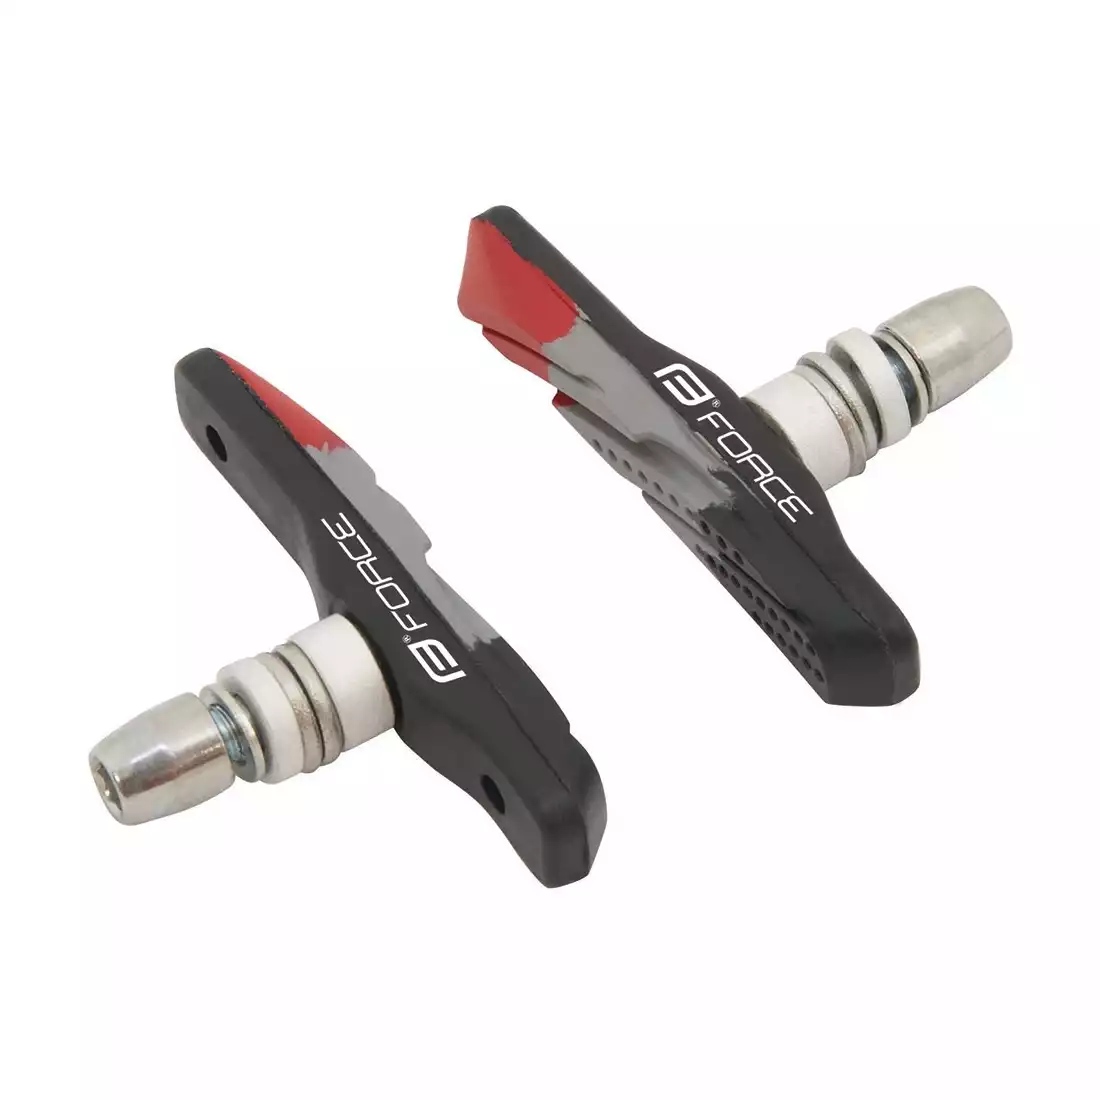 FORCE brake pads for v-break brakes black-gray-red 70 mm